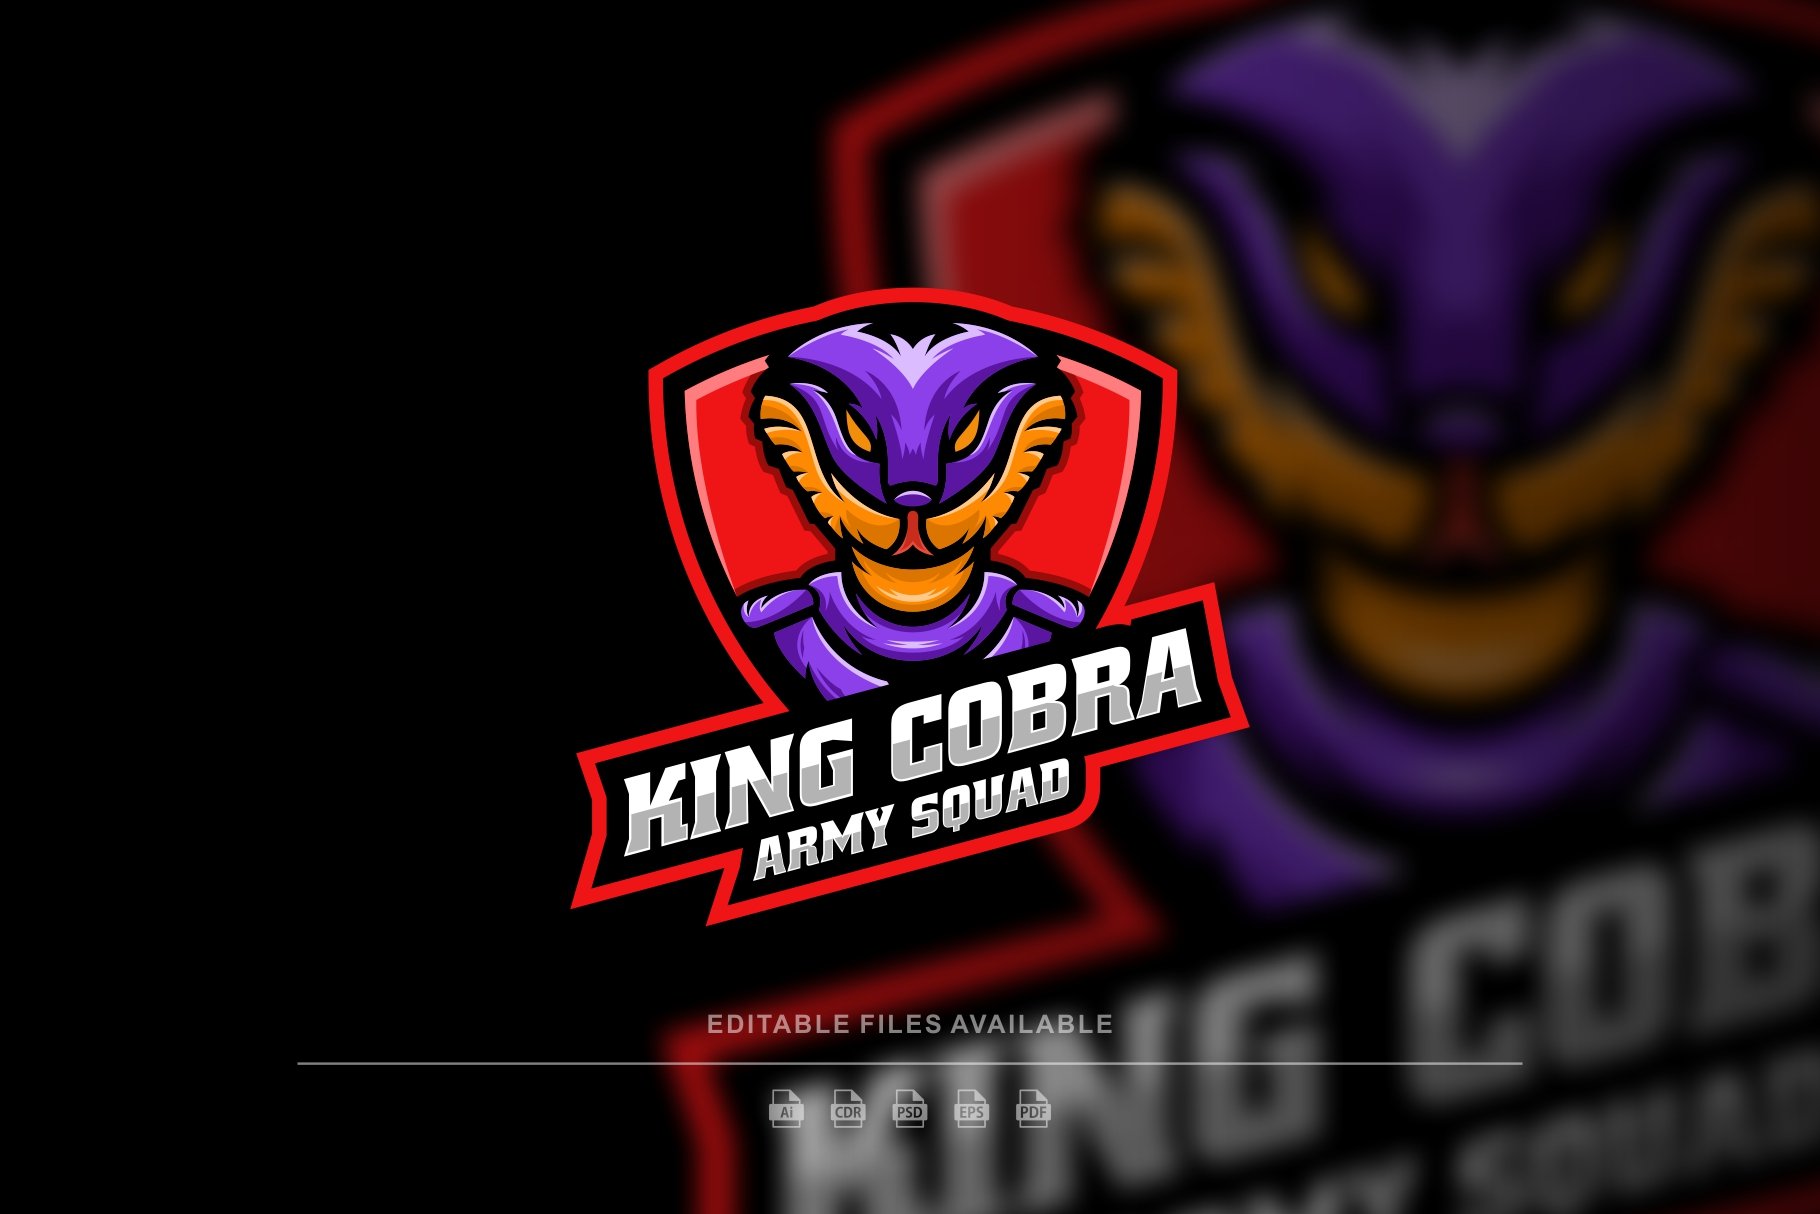 King Cobra E-Sport Logo cover image.